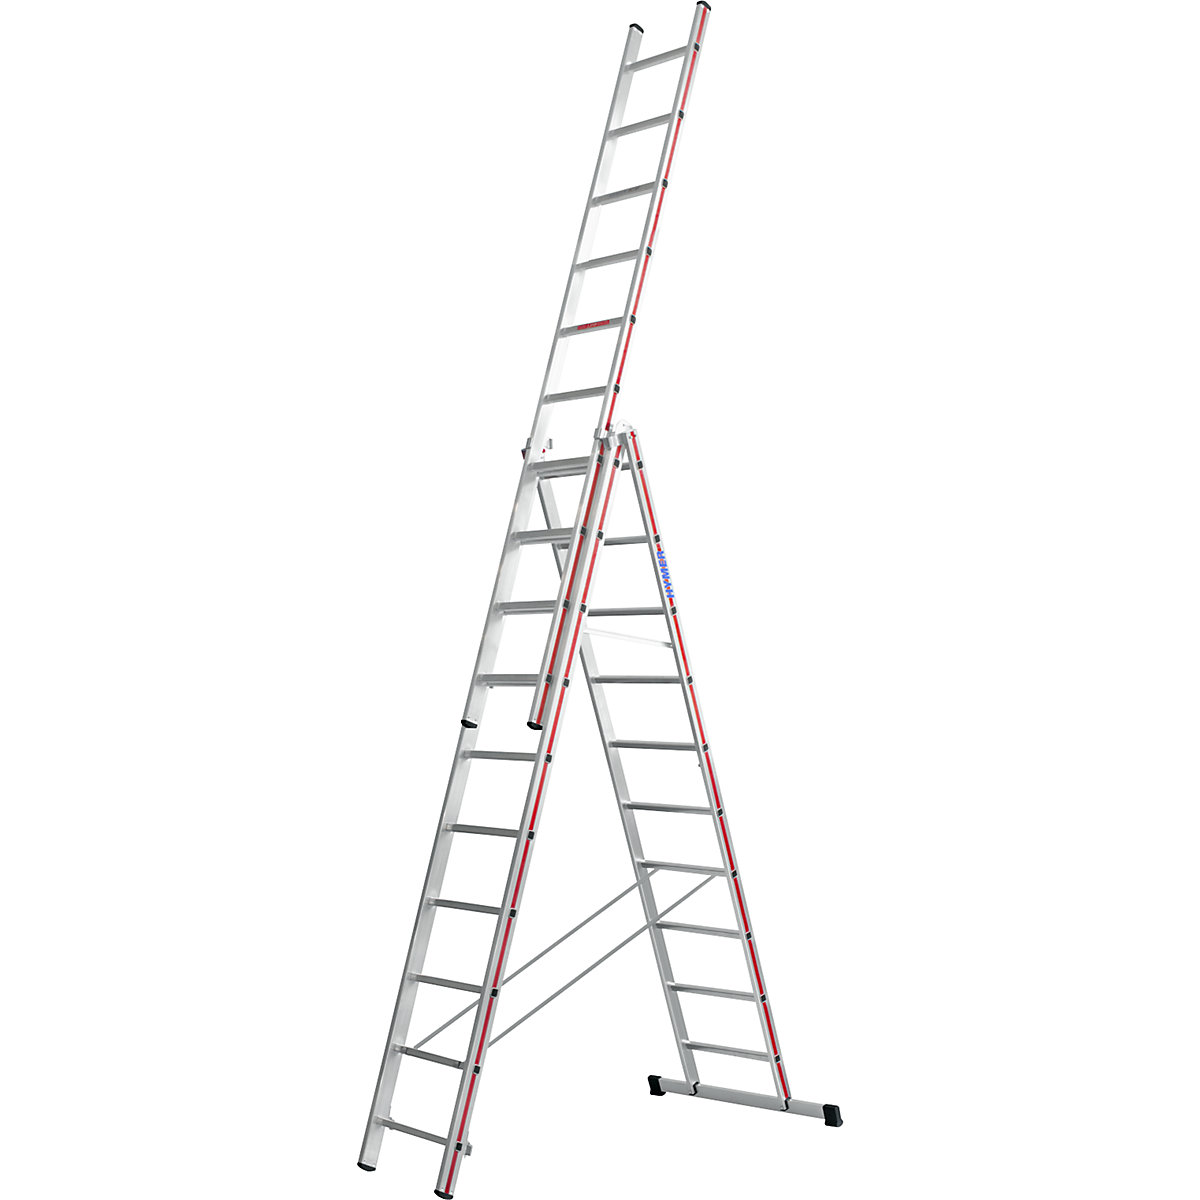 Hliníkový víceúčelový žebřík – HYMER, provedení Profi, 3 x 10 příčlí, max. pracovní výška 7,94 m